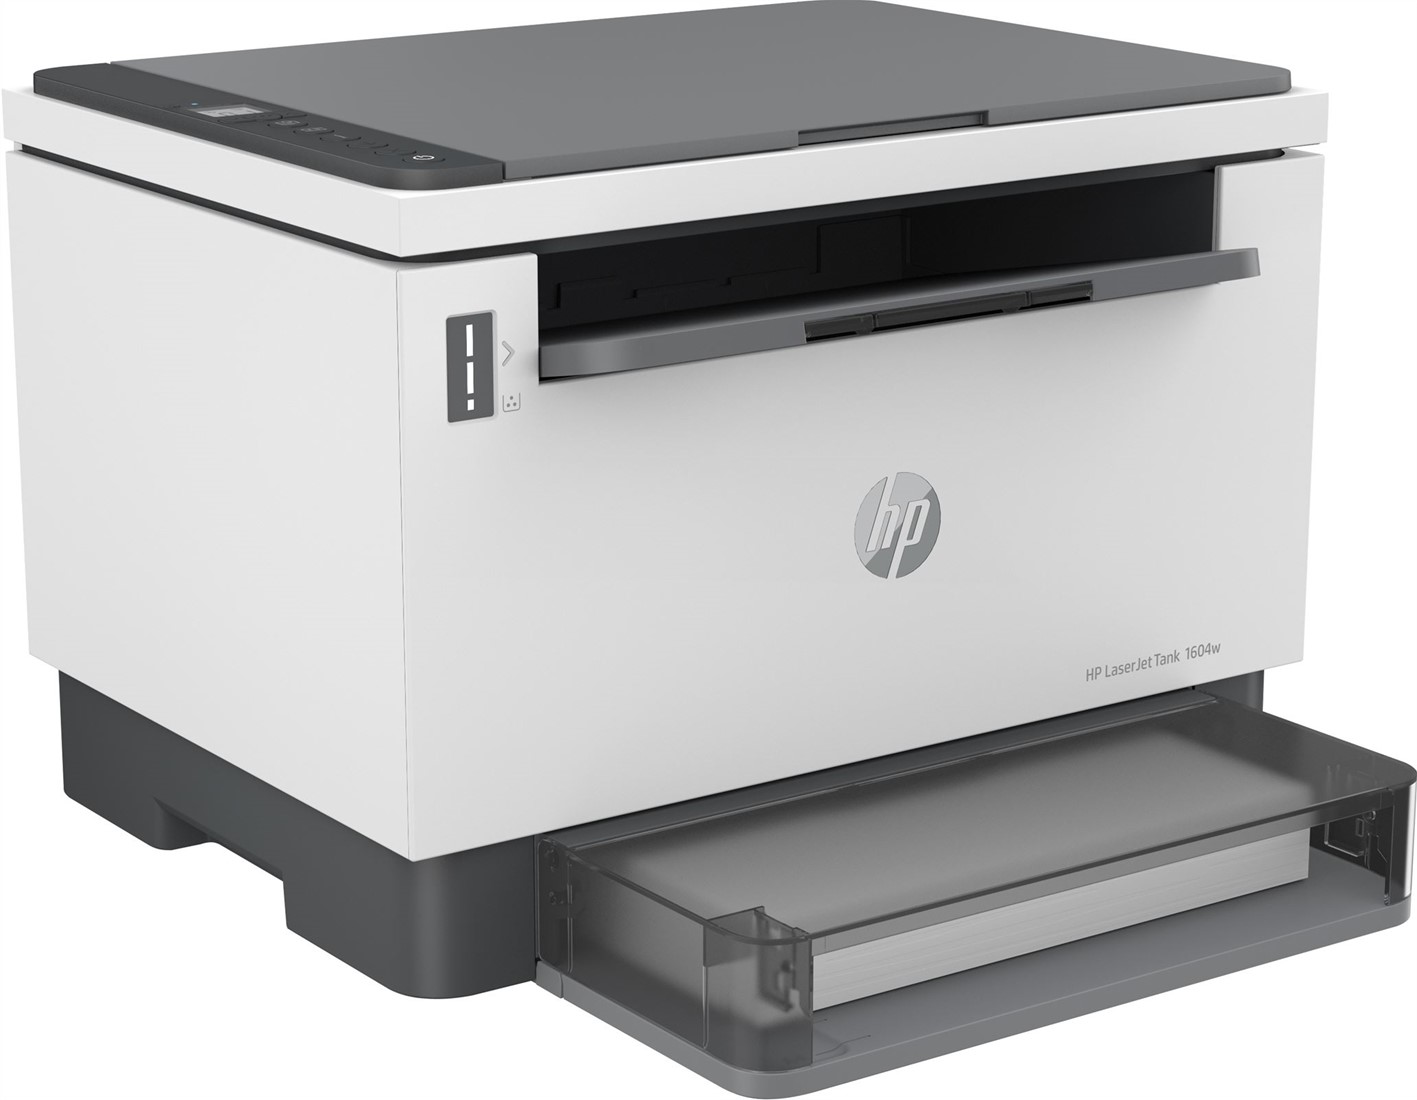 HP LaserJet Tank MFP 1604w printer, Zwart-wit, Printer voor Bedrijf, Printen, kopiëren, scannen, naar e-mail; Scannen naar Scannen naar PDF; Dual-band Wi-Fi bij ICT-Store.nl